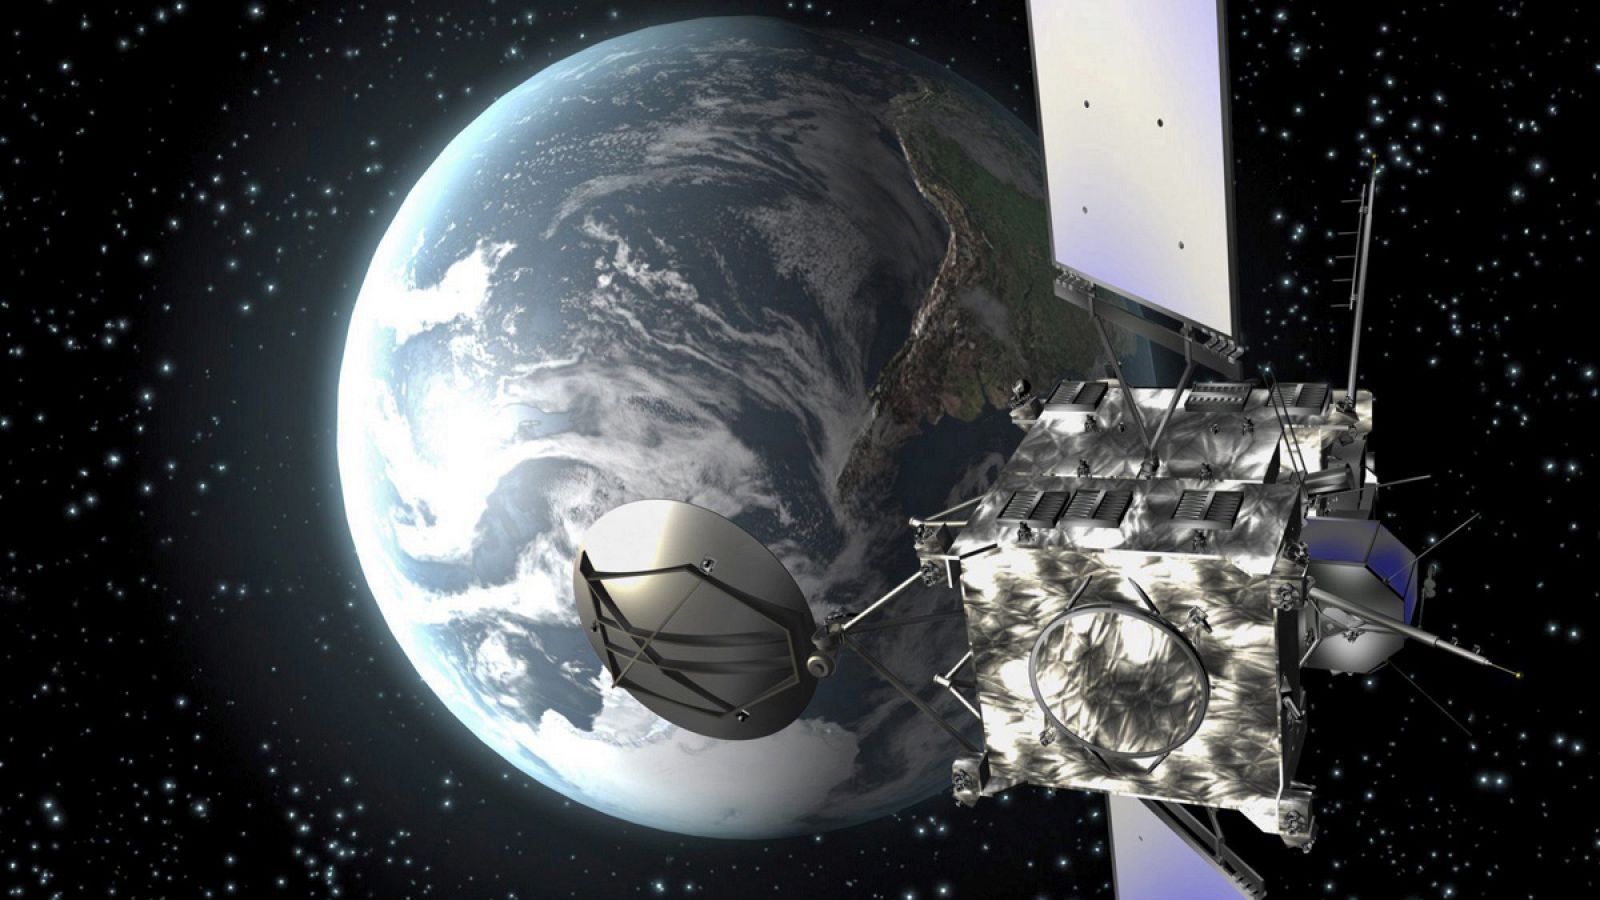 Imagen facilitada por la Agencia Espacial Europea (ESA) que muestra una animación por ordenador de Rosetta.